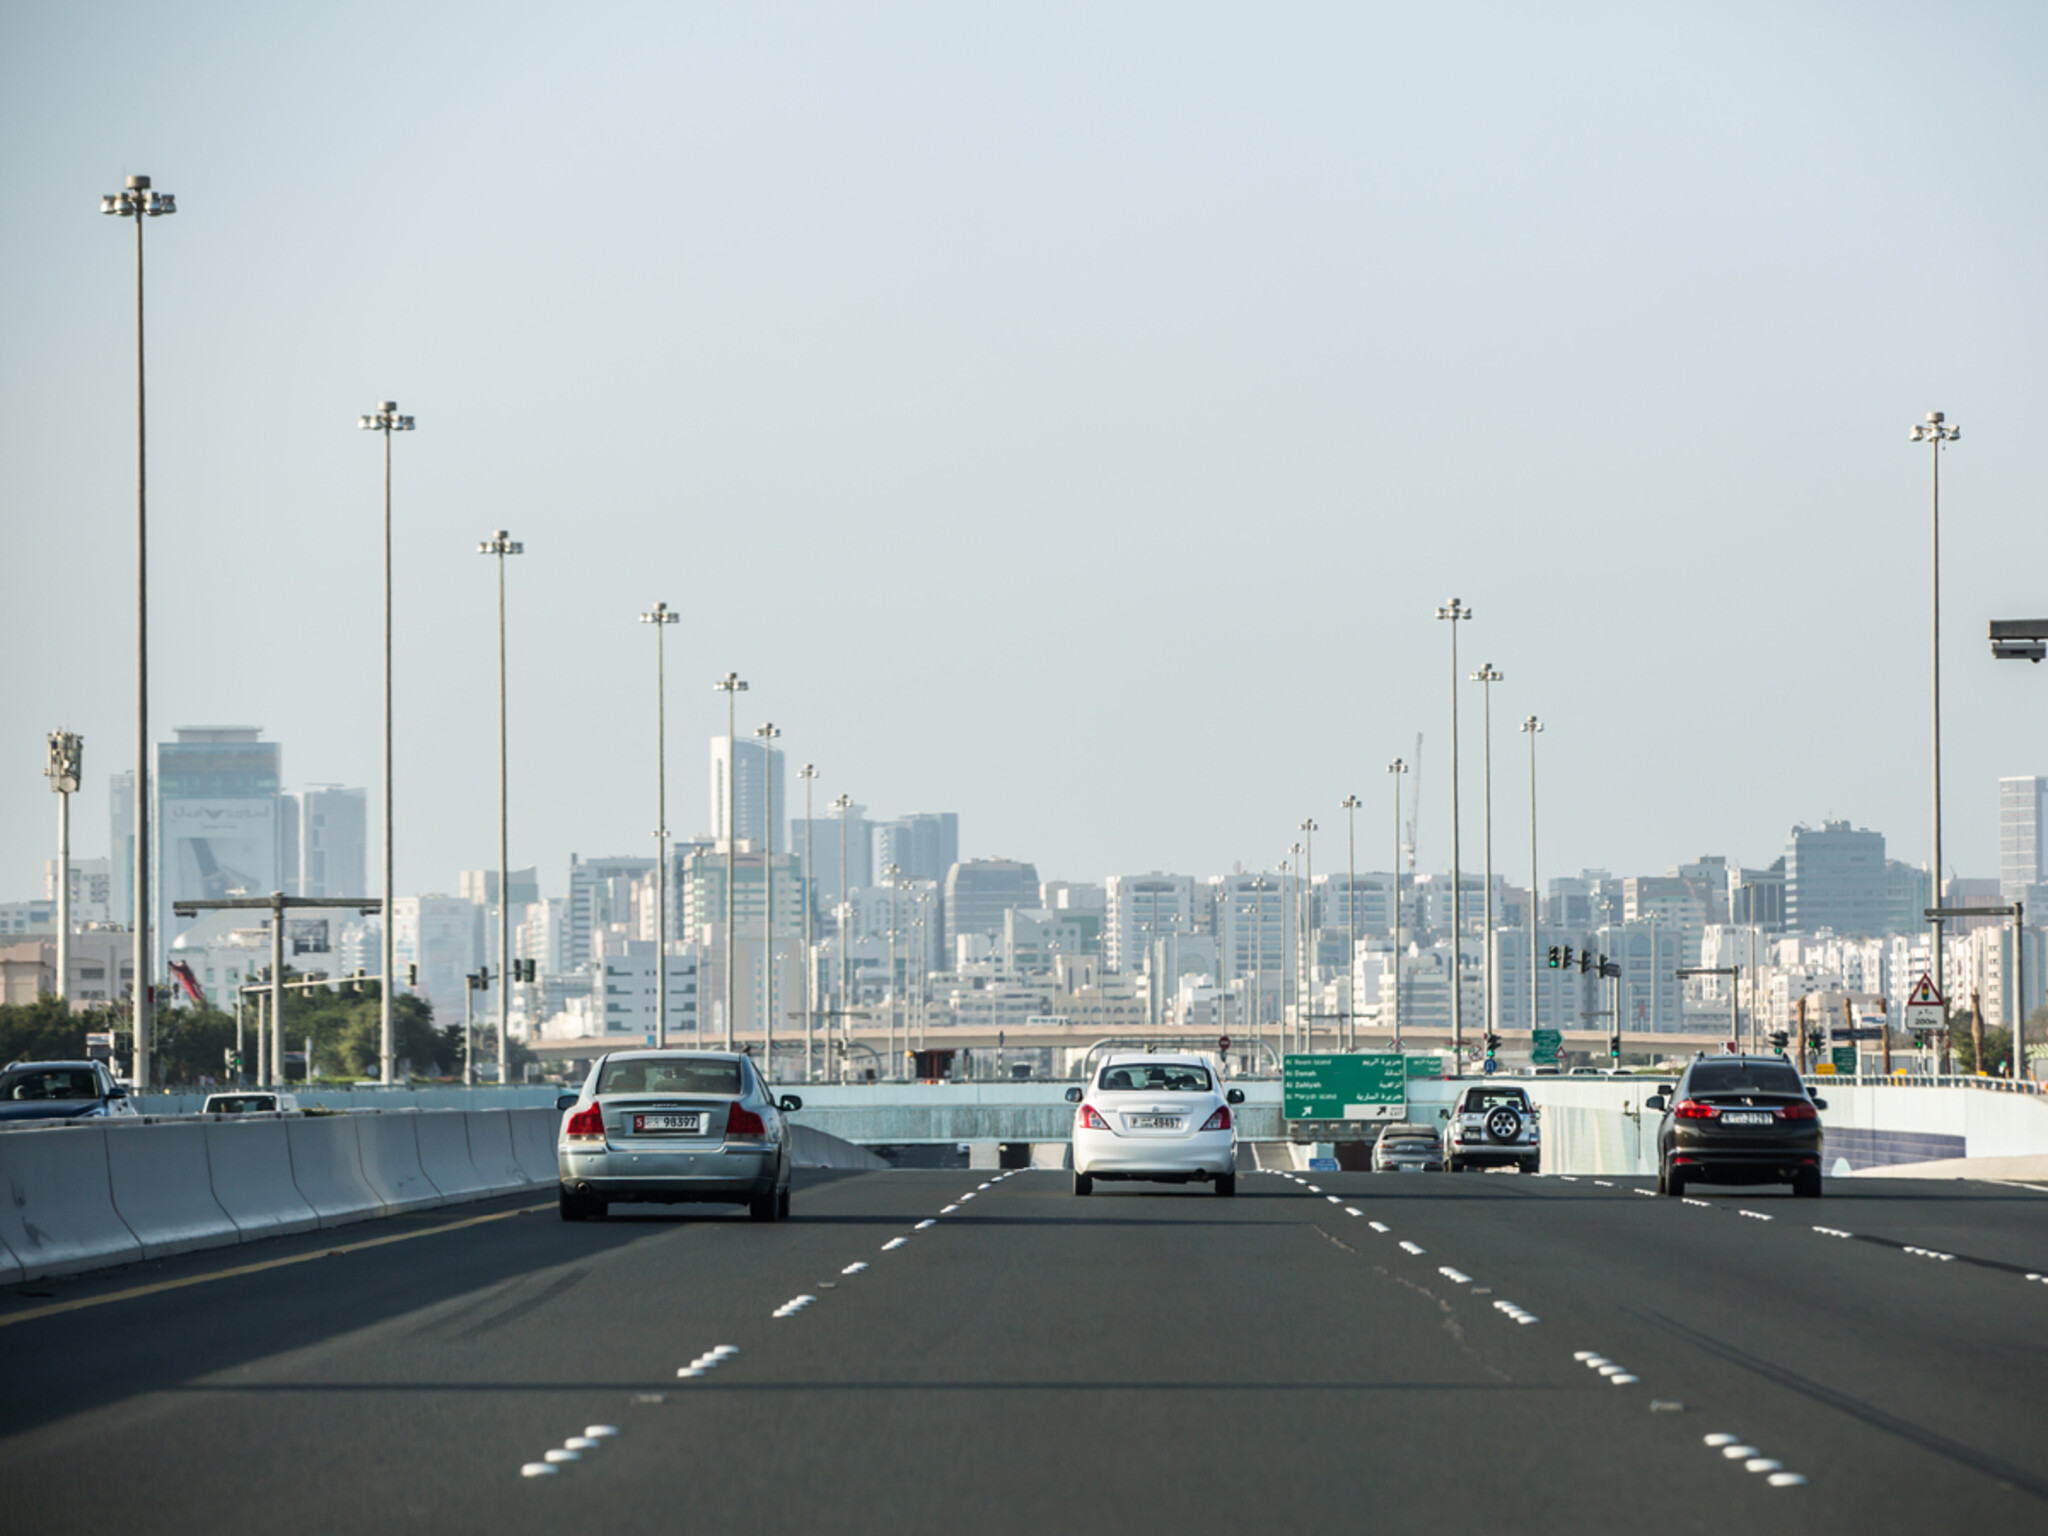 هيئة الطرق تصدر تنبيه مروري بشأن حظر سير بعض المركبات في دبي